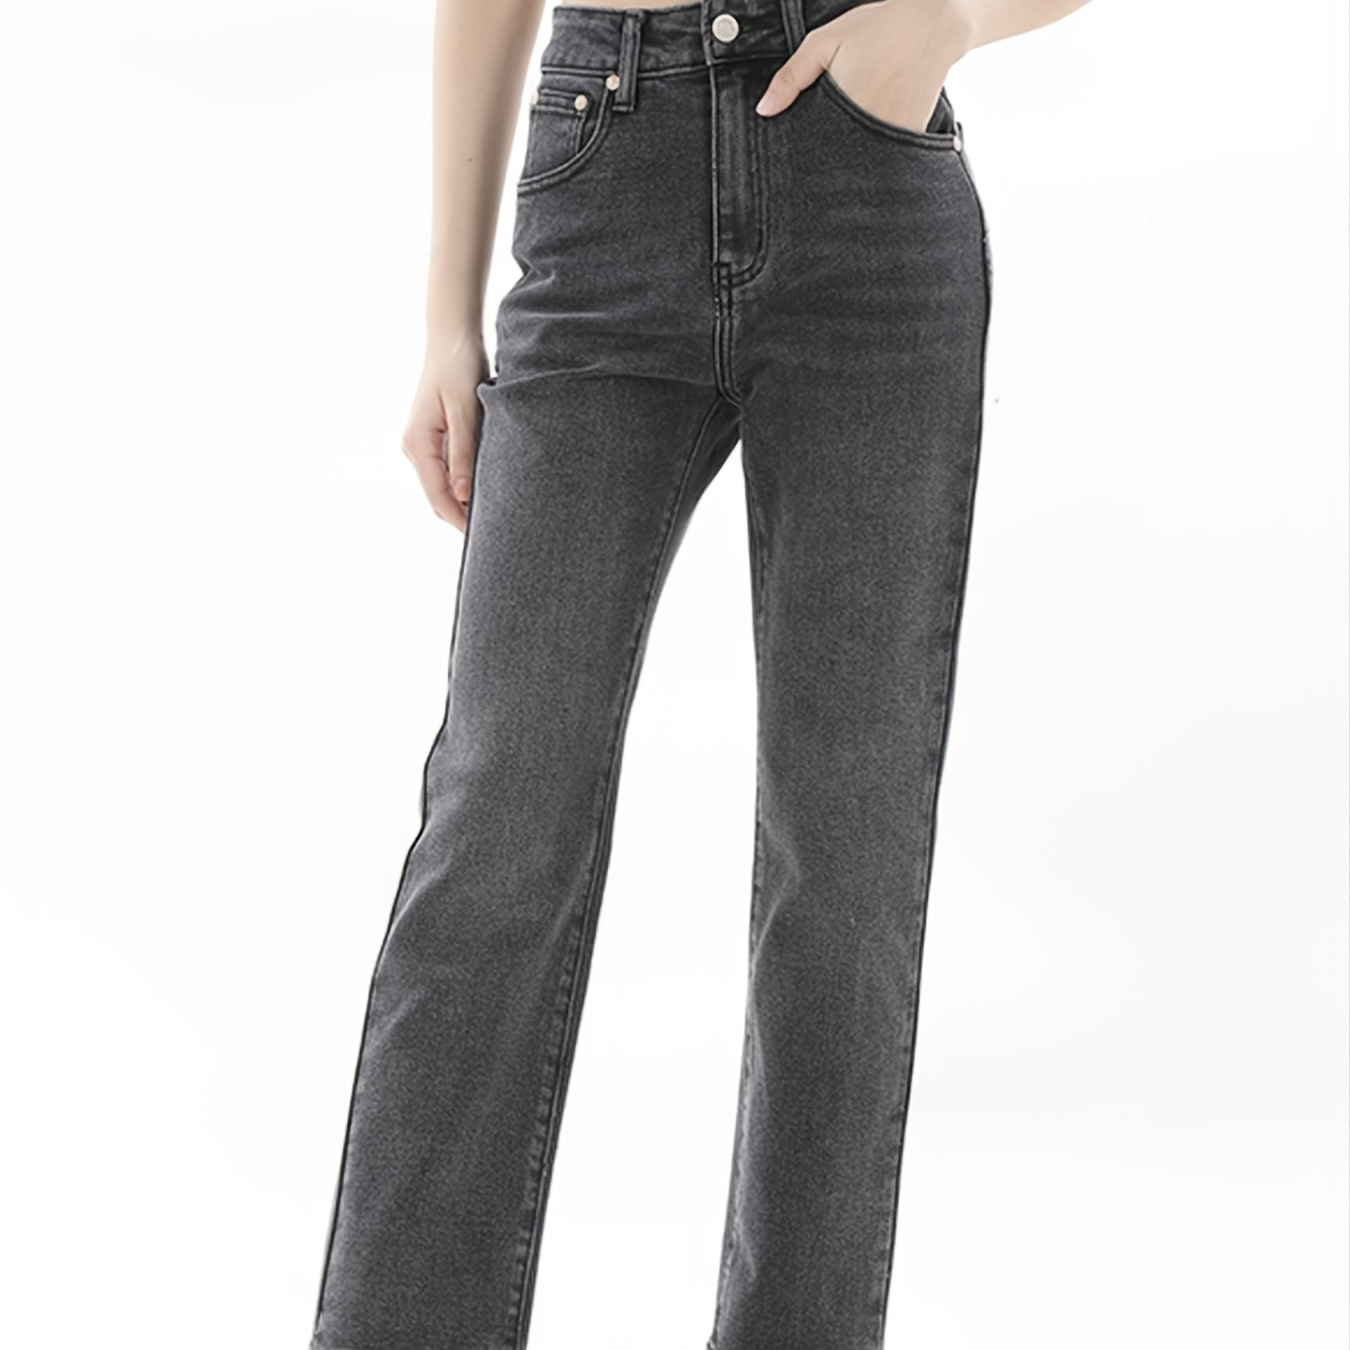 Jeans skinny * escuro de cintura alta, cintura alta, design liso, elástico,  ajuste justo, calças jeans femininas e roupas